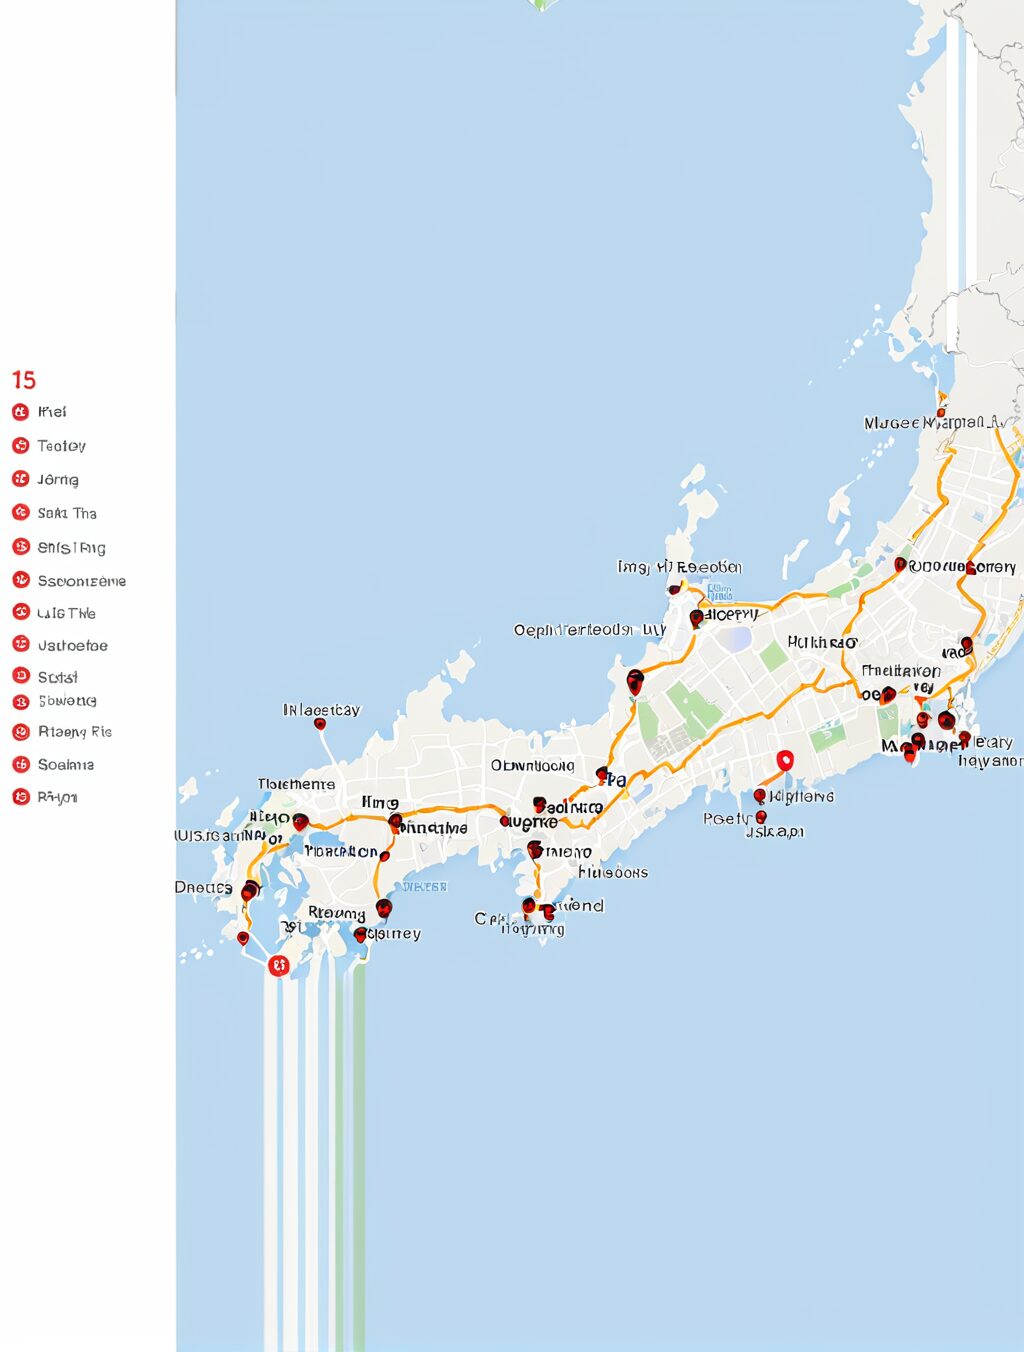 1 week in japan itinerary reddit